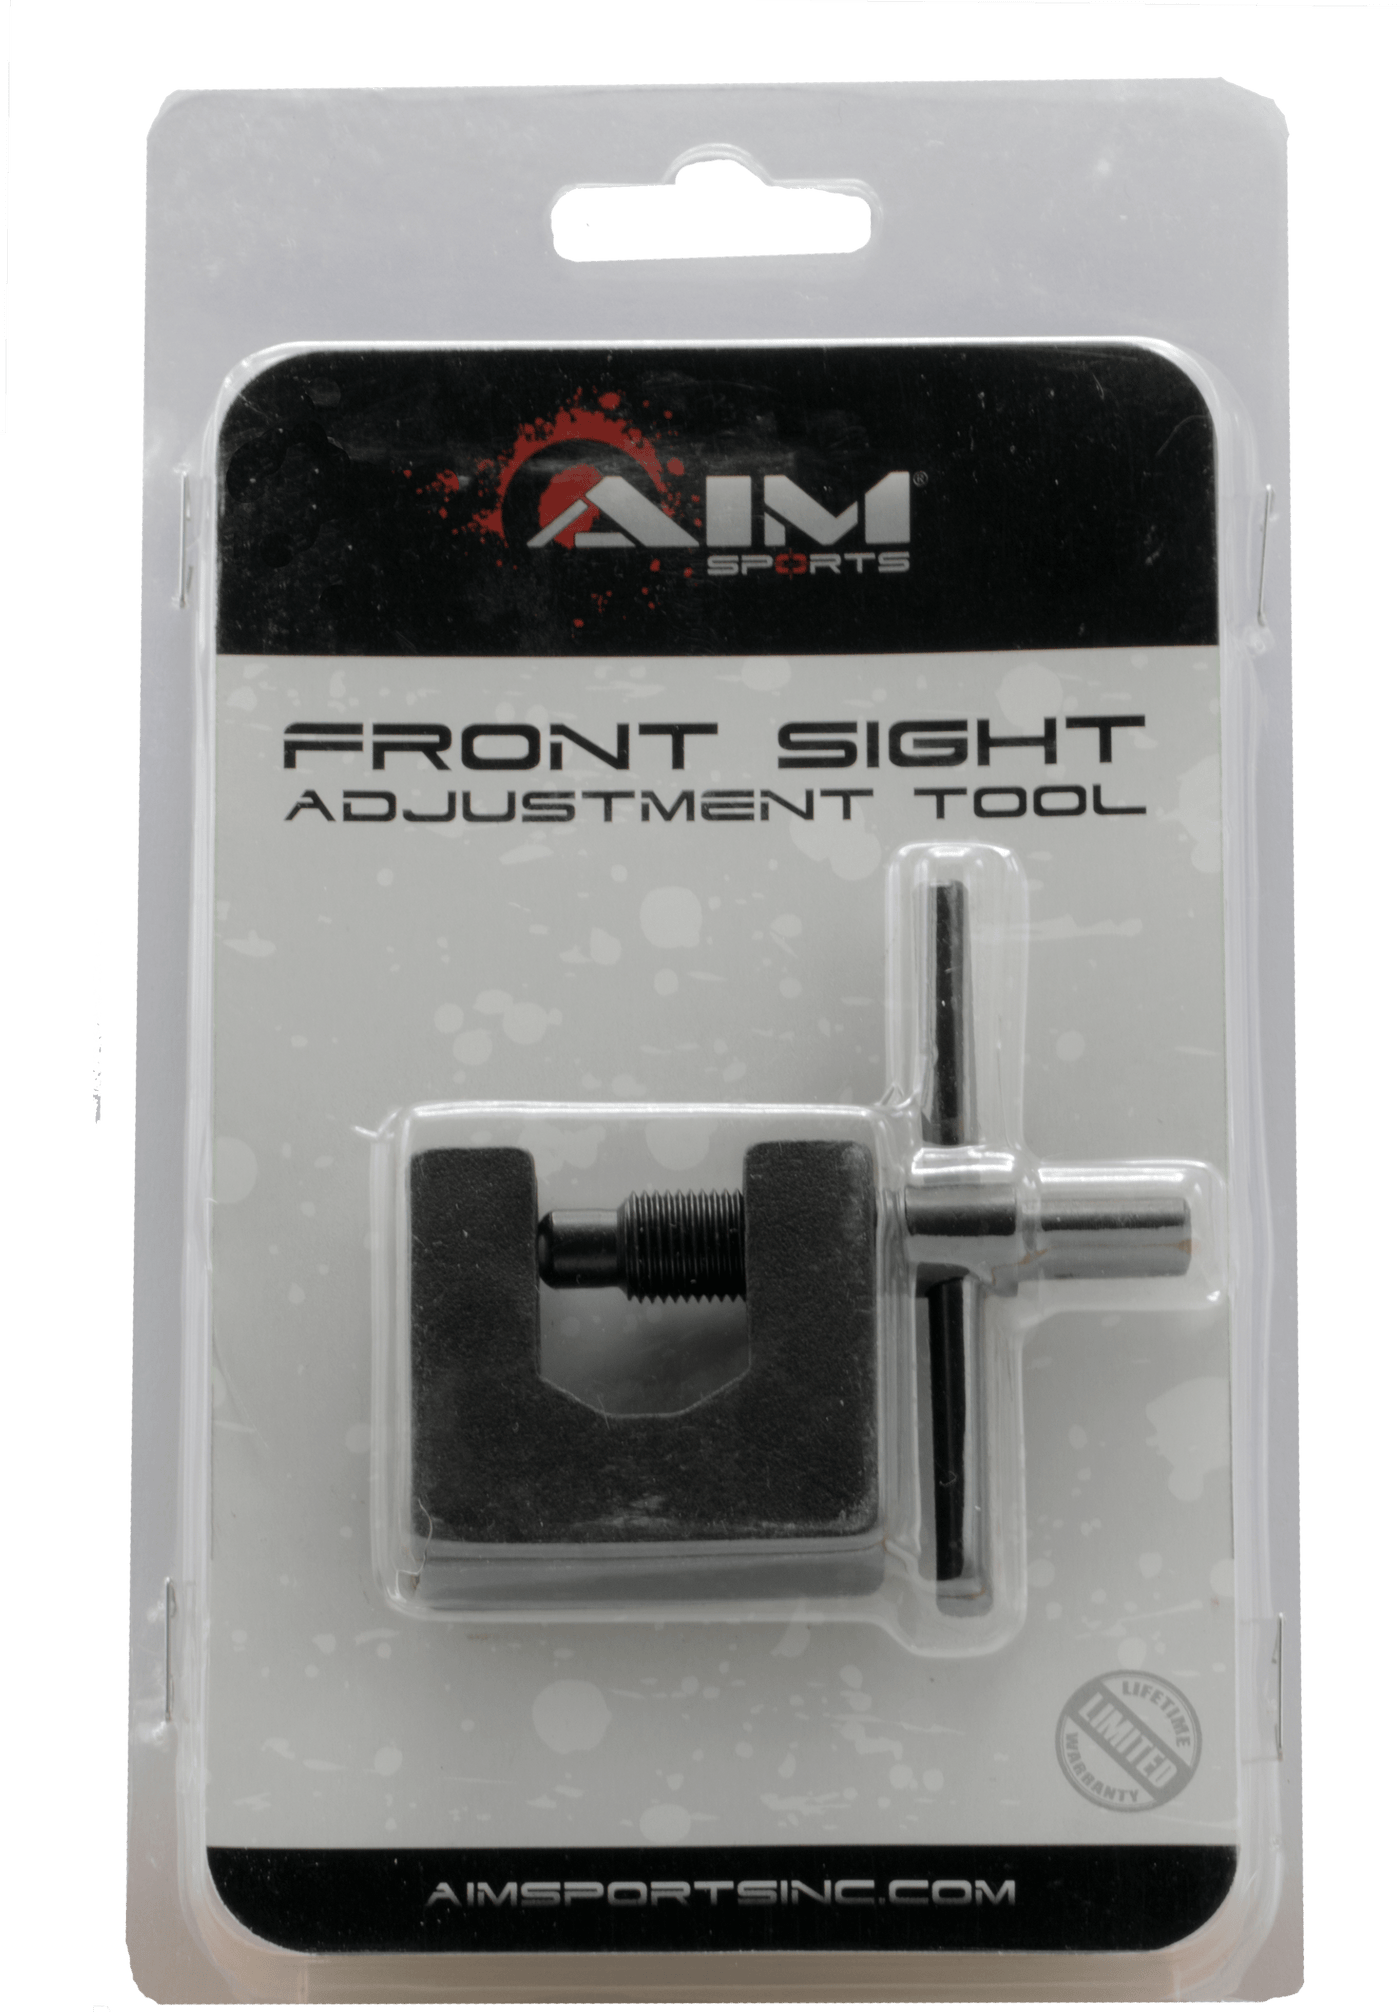 Aim Sports Aim Sports Sight Adjustment Tool, Aimsports Pjksa     Ak/sks Front Sgt Adjust Tool Firearm Accessories